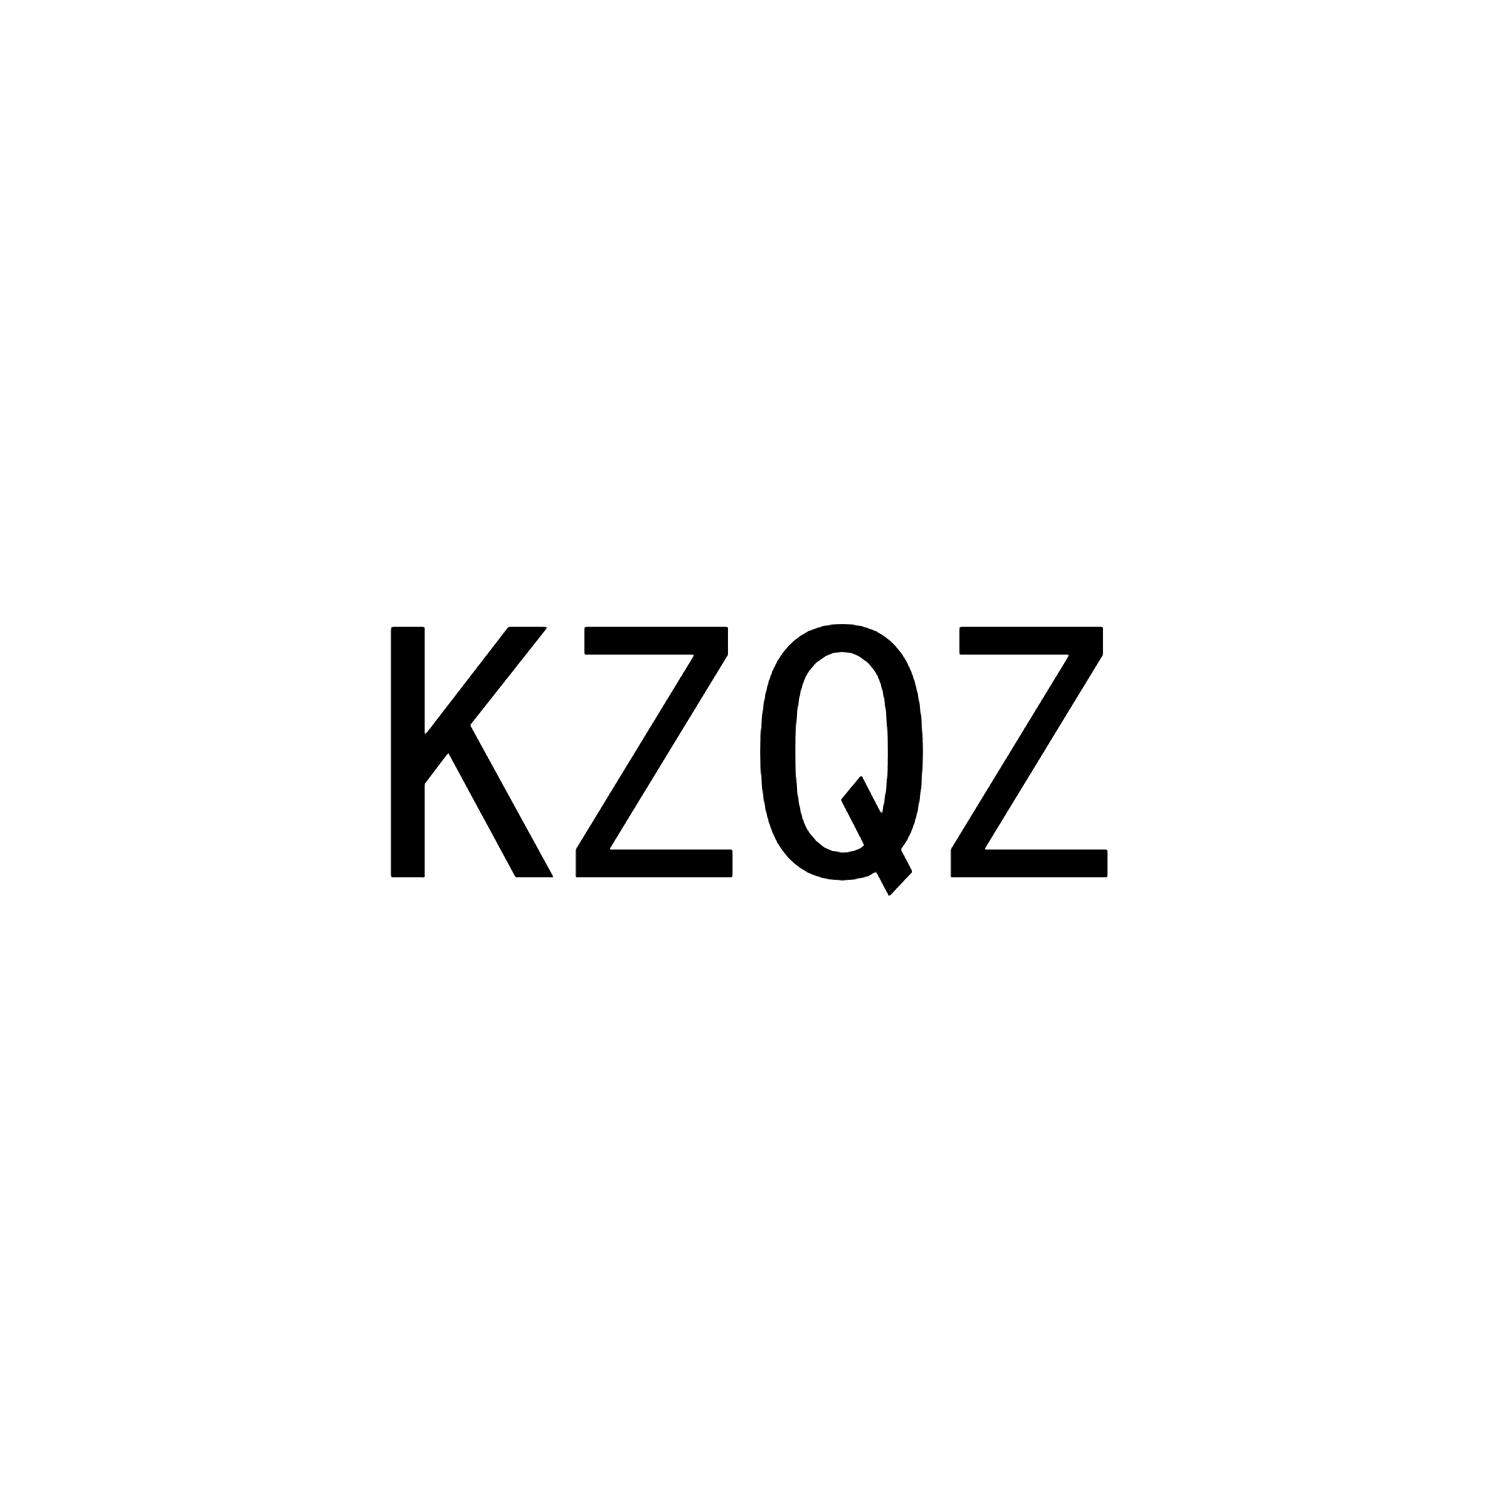 KZQZ